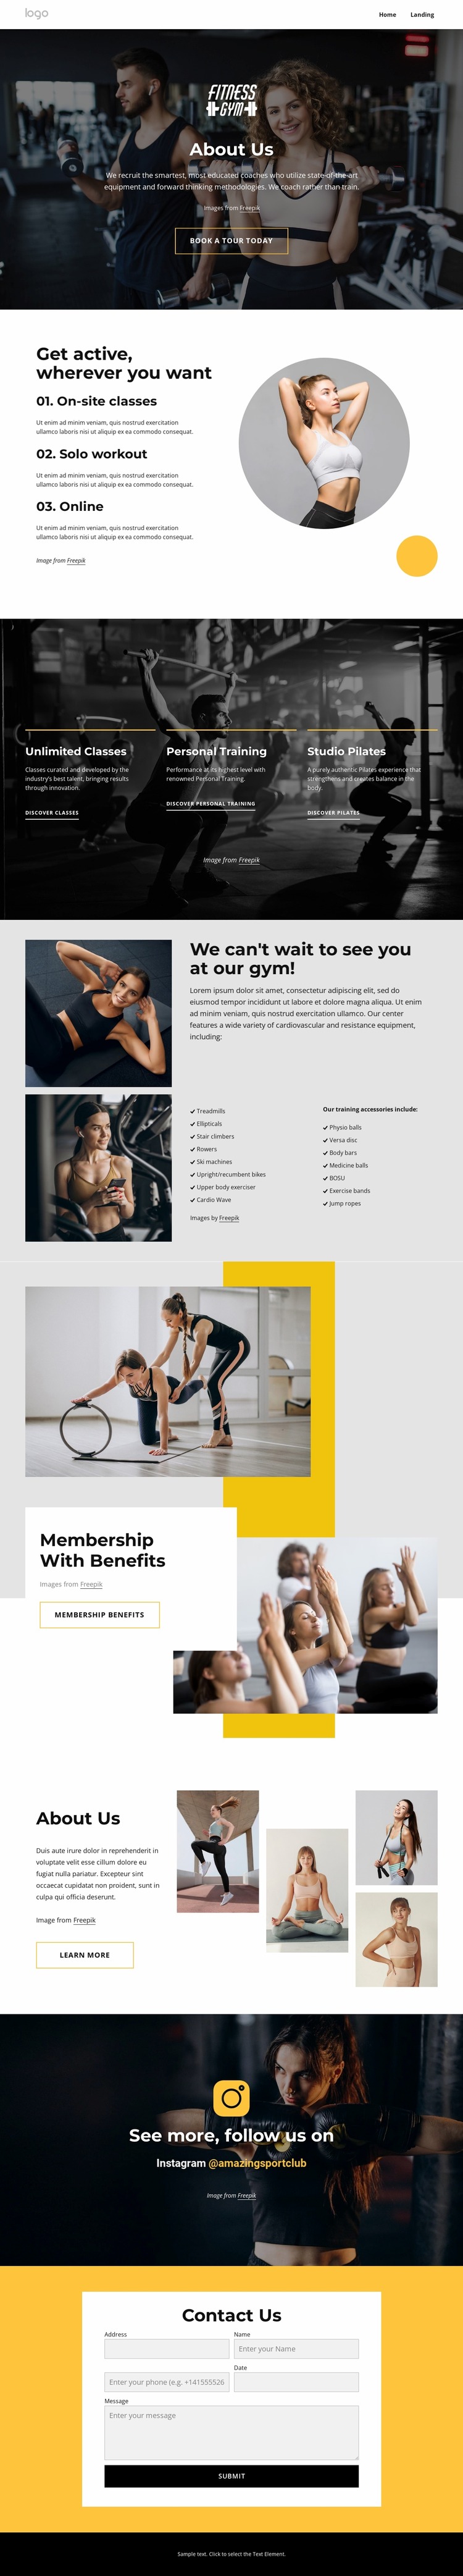 Sport and wellness center WordPress Website Builder